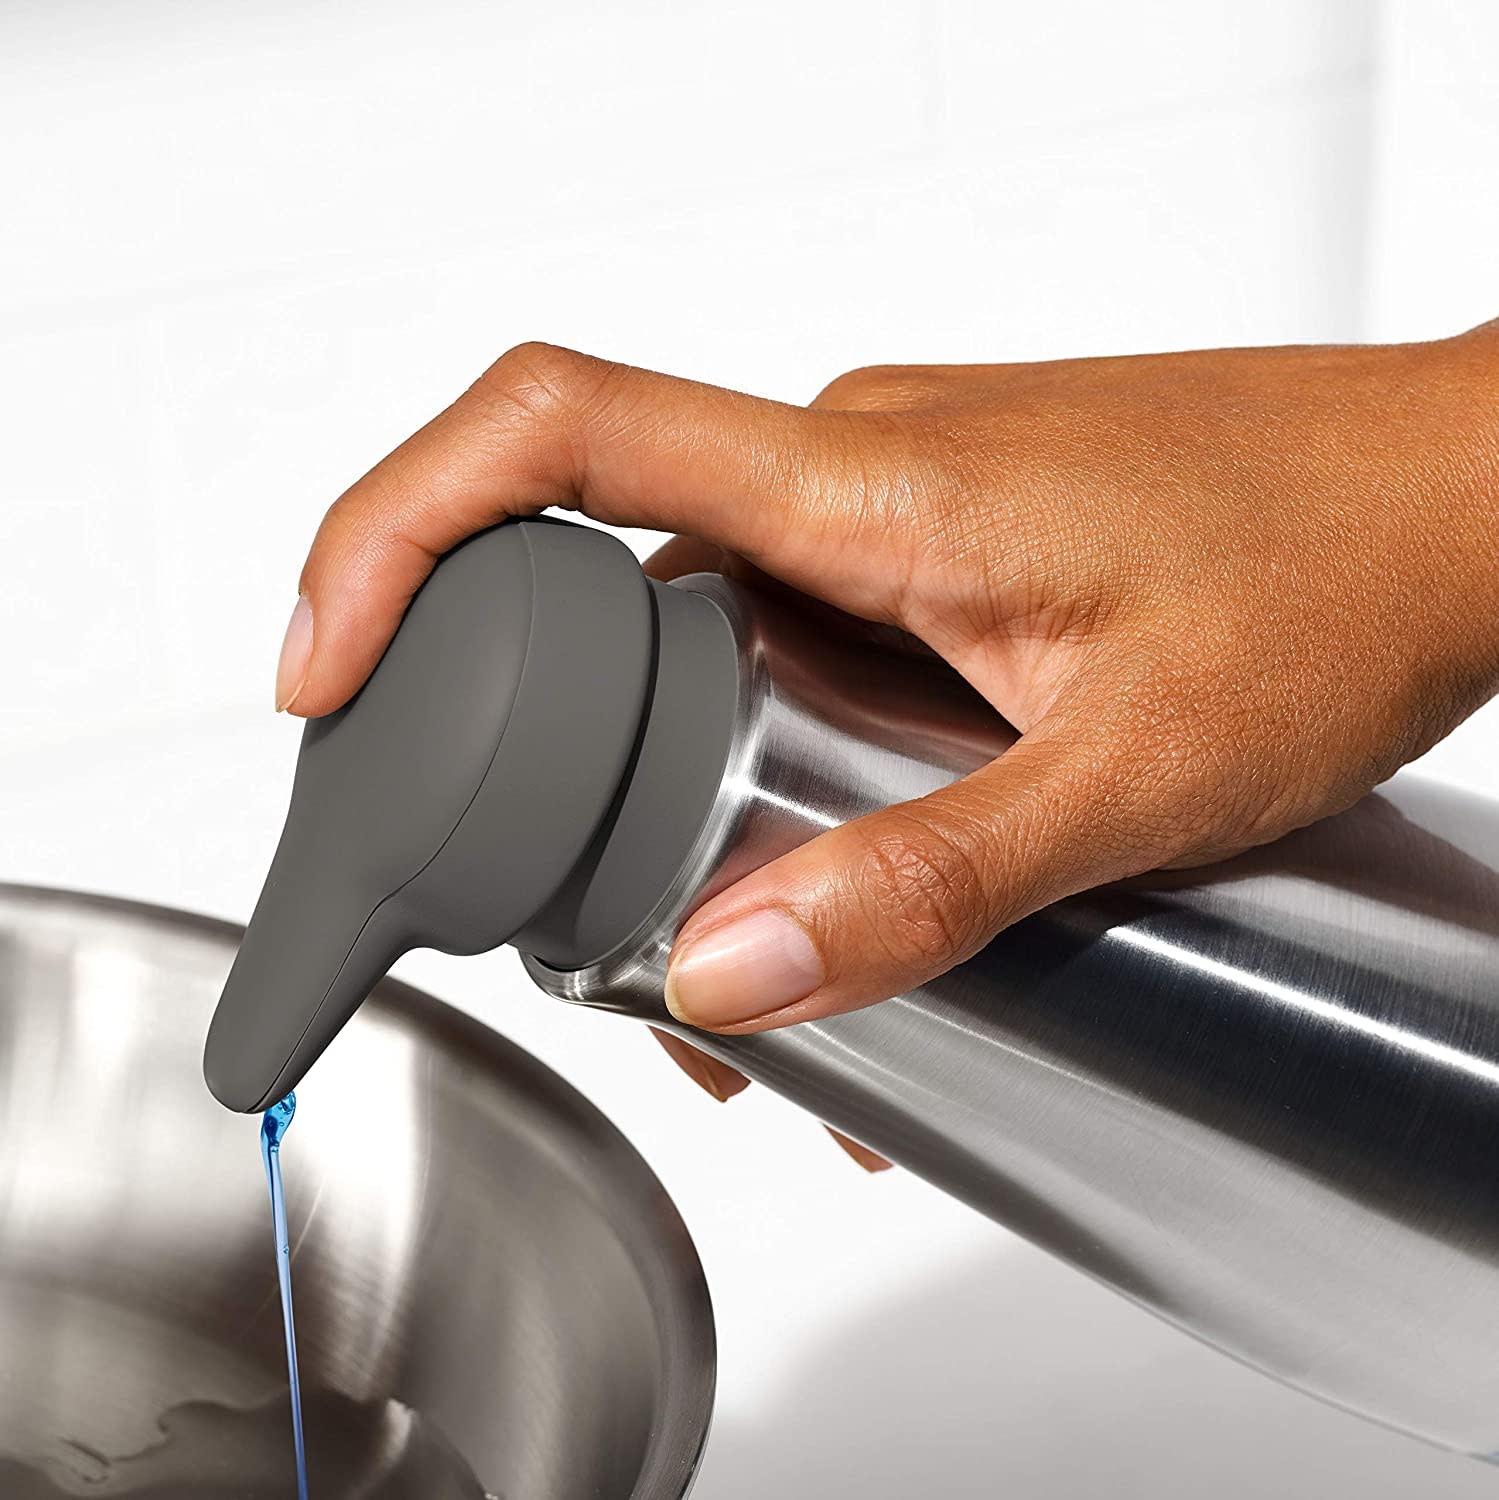 OXO Good Grips Easy Press Soap Dispenser